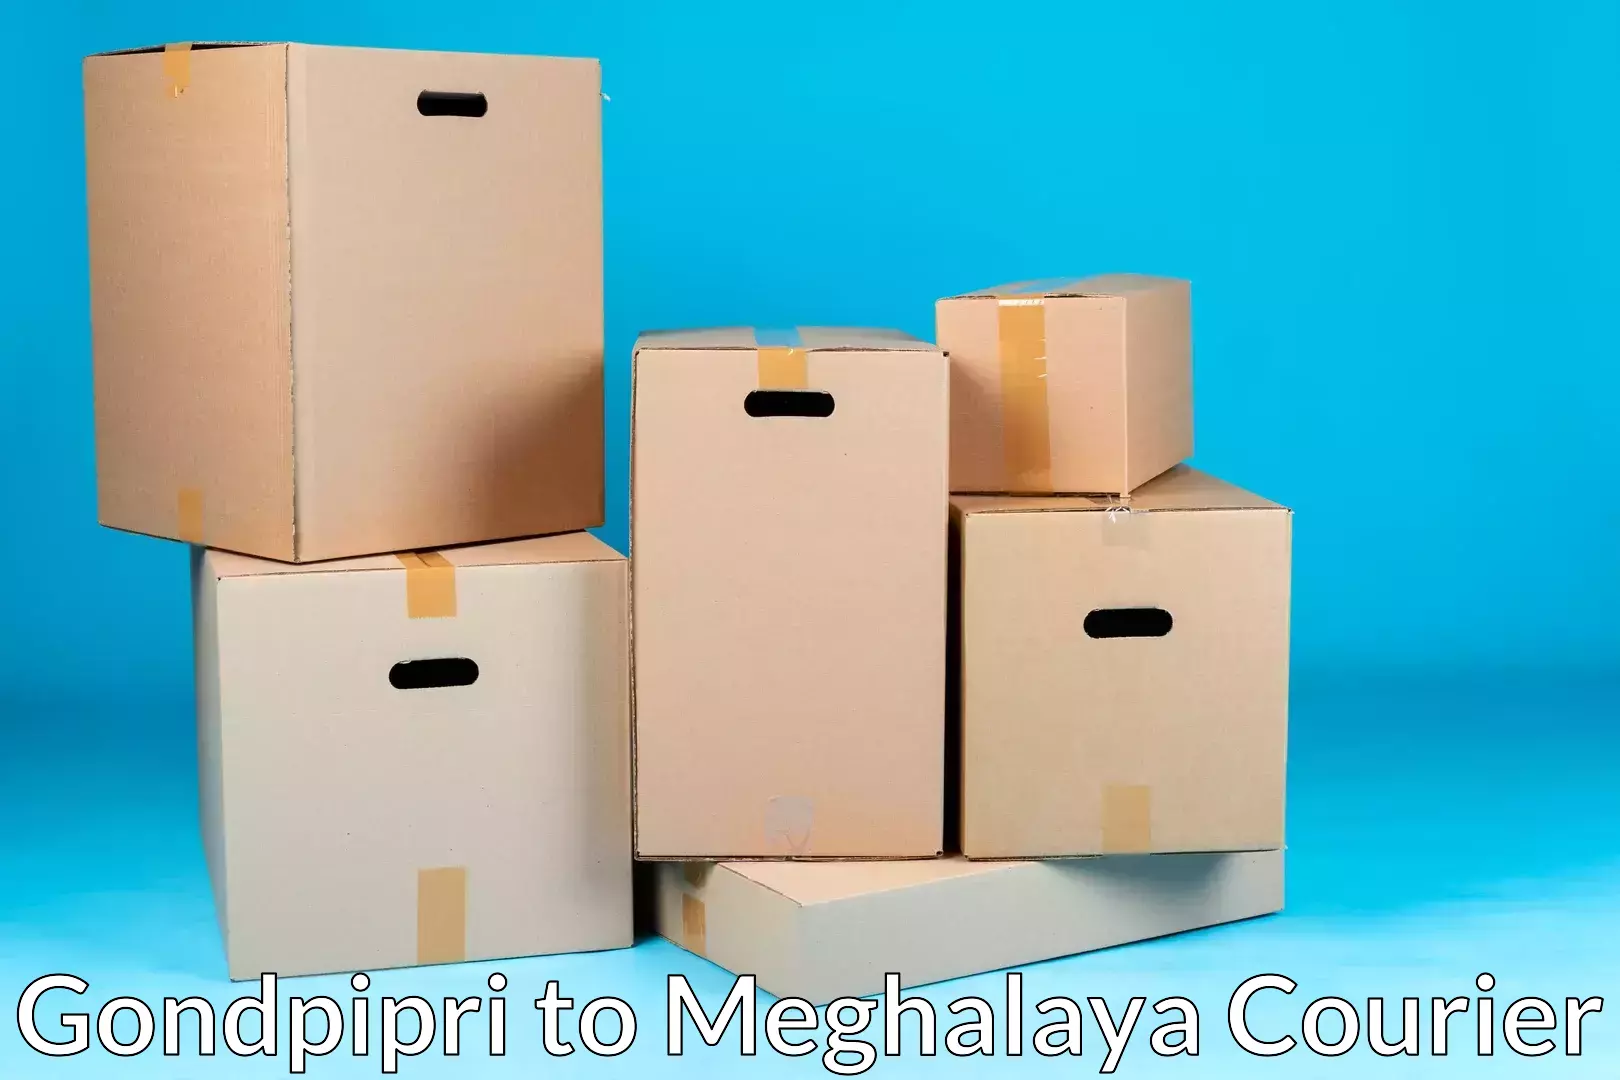 Residential moving experts Gondpipri to Meghalaya